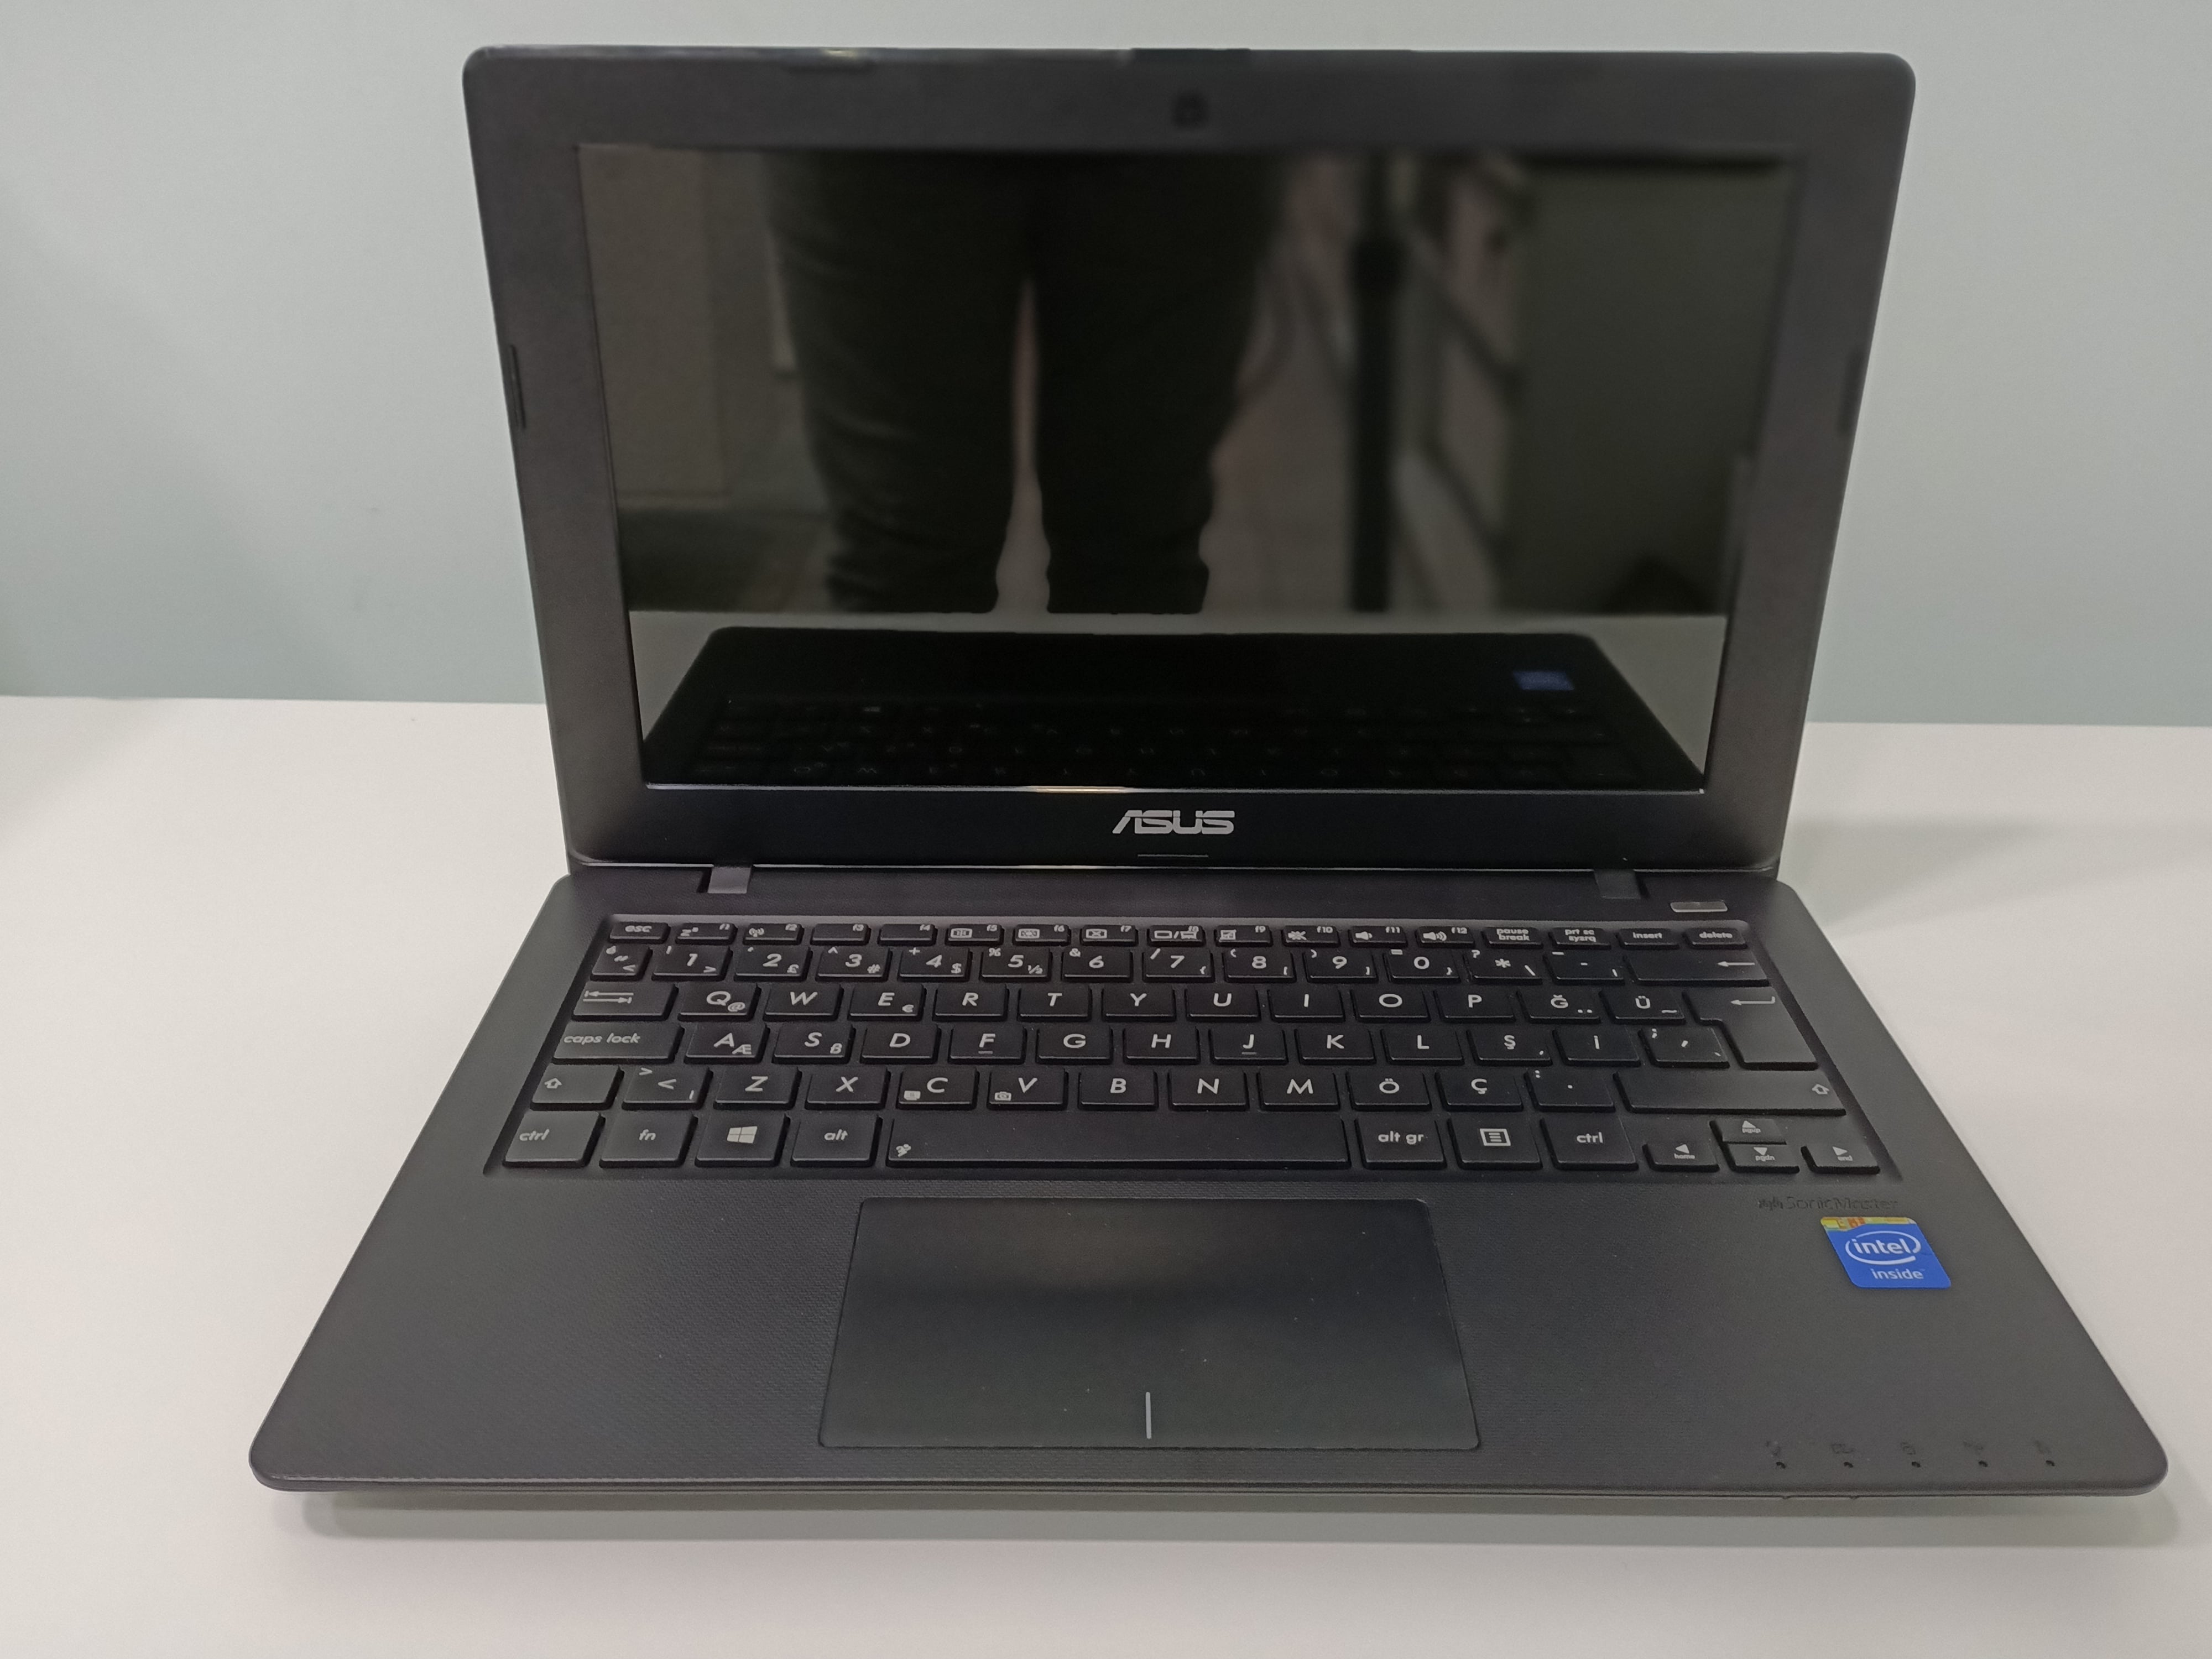 İkinci El Laptop  Asus Vivobook x200ca Intel 1007U 4GB Ram 320GB HDD